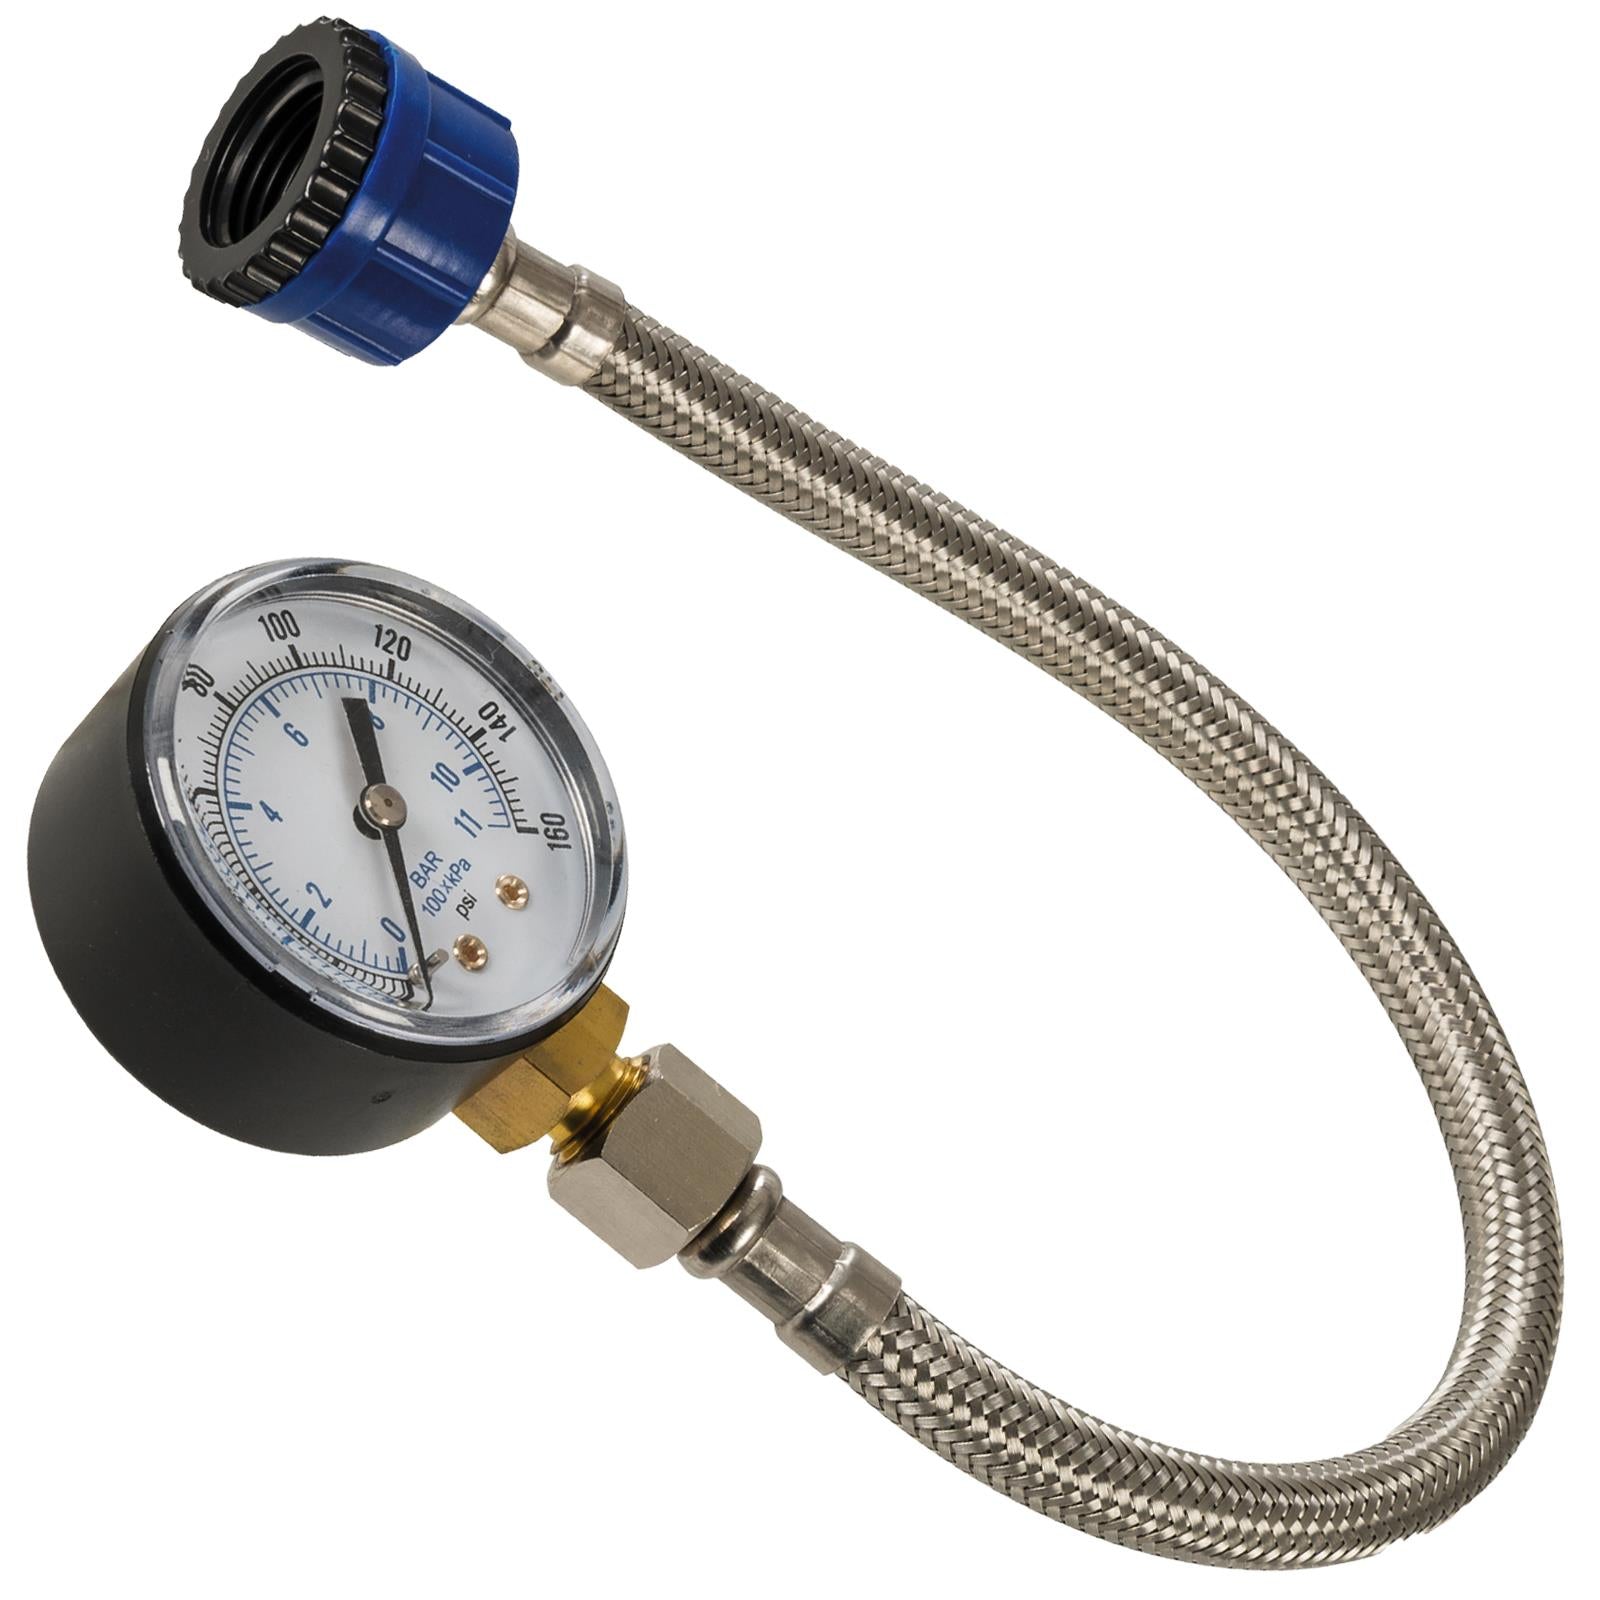 Silverline Mains Water Pressure Test Gauge 0-11bar (0-160psi)